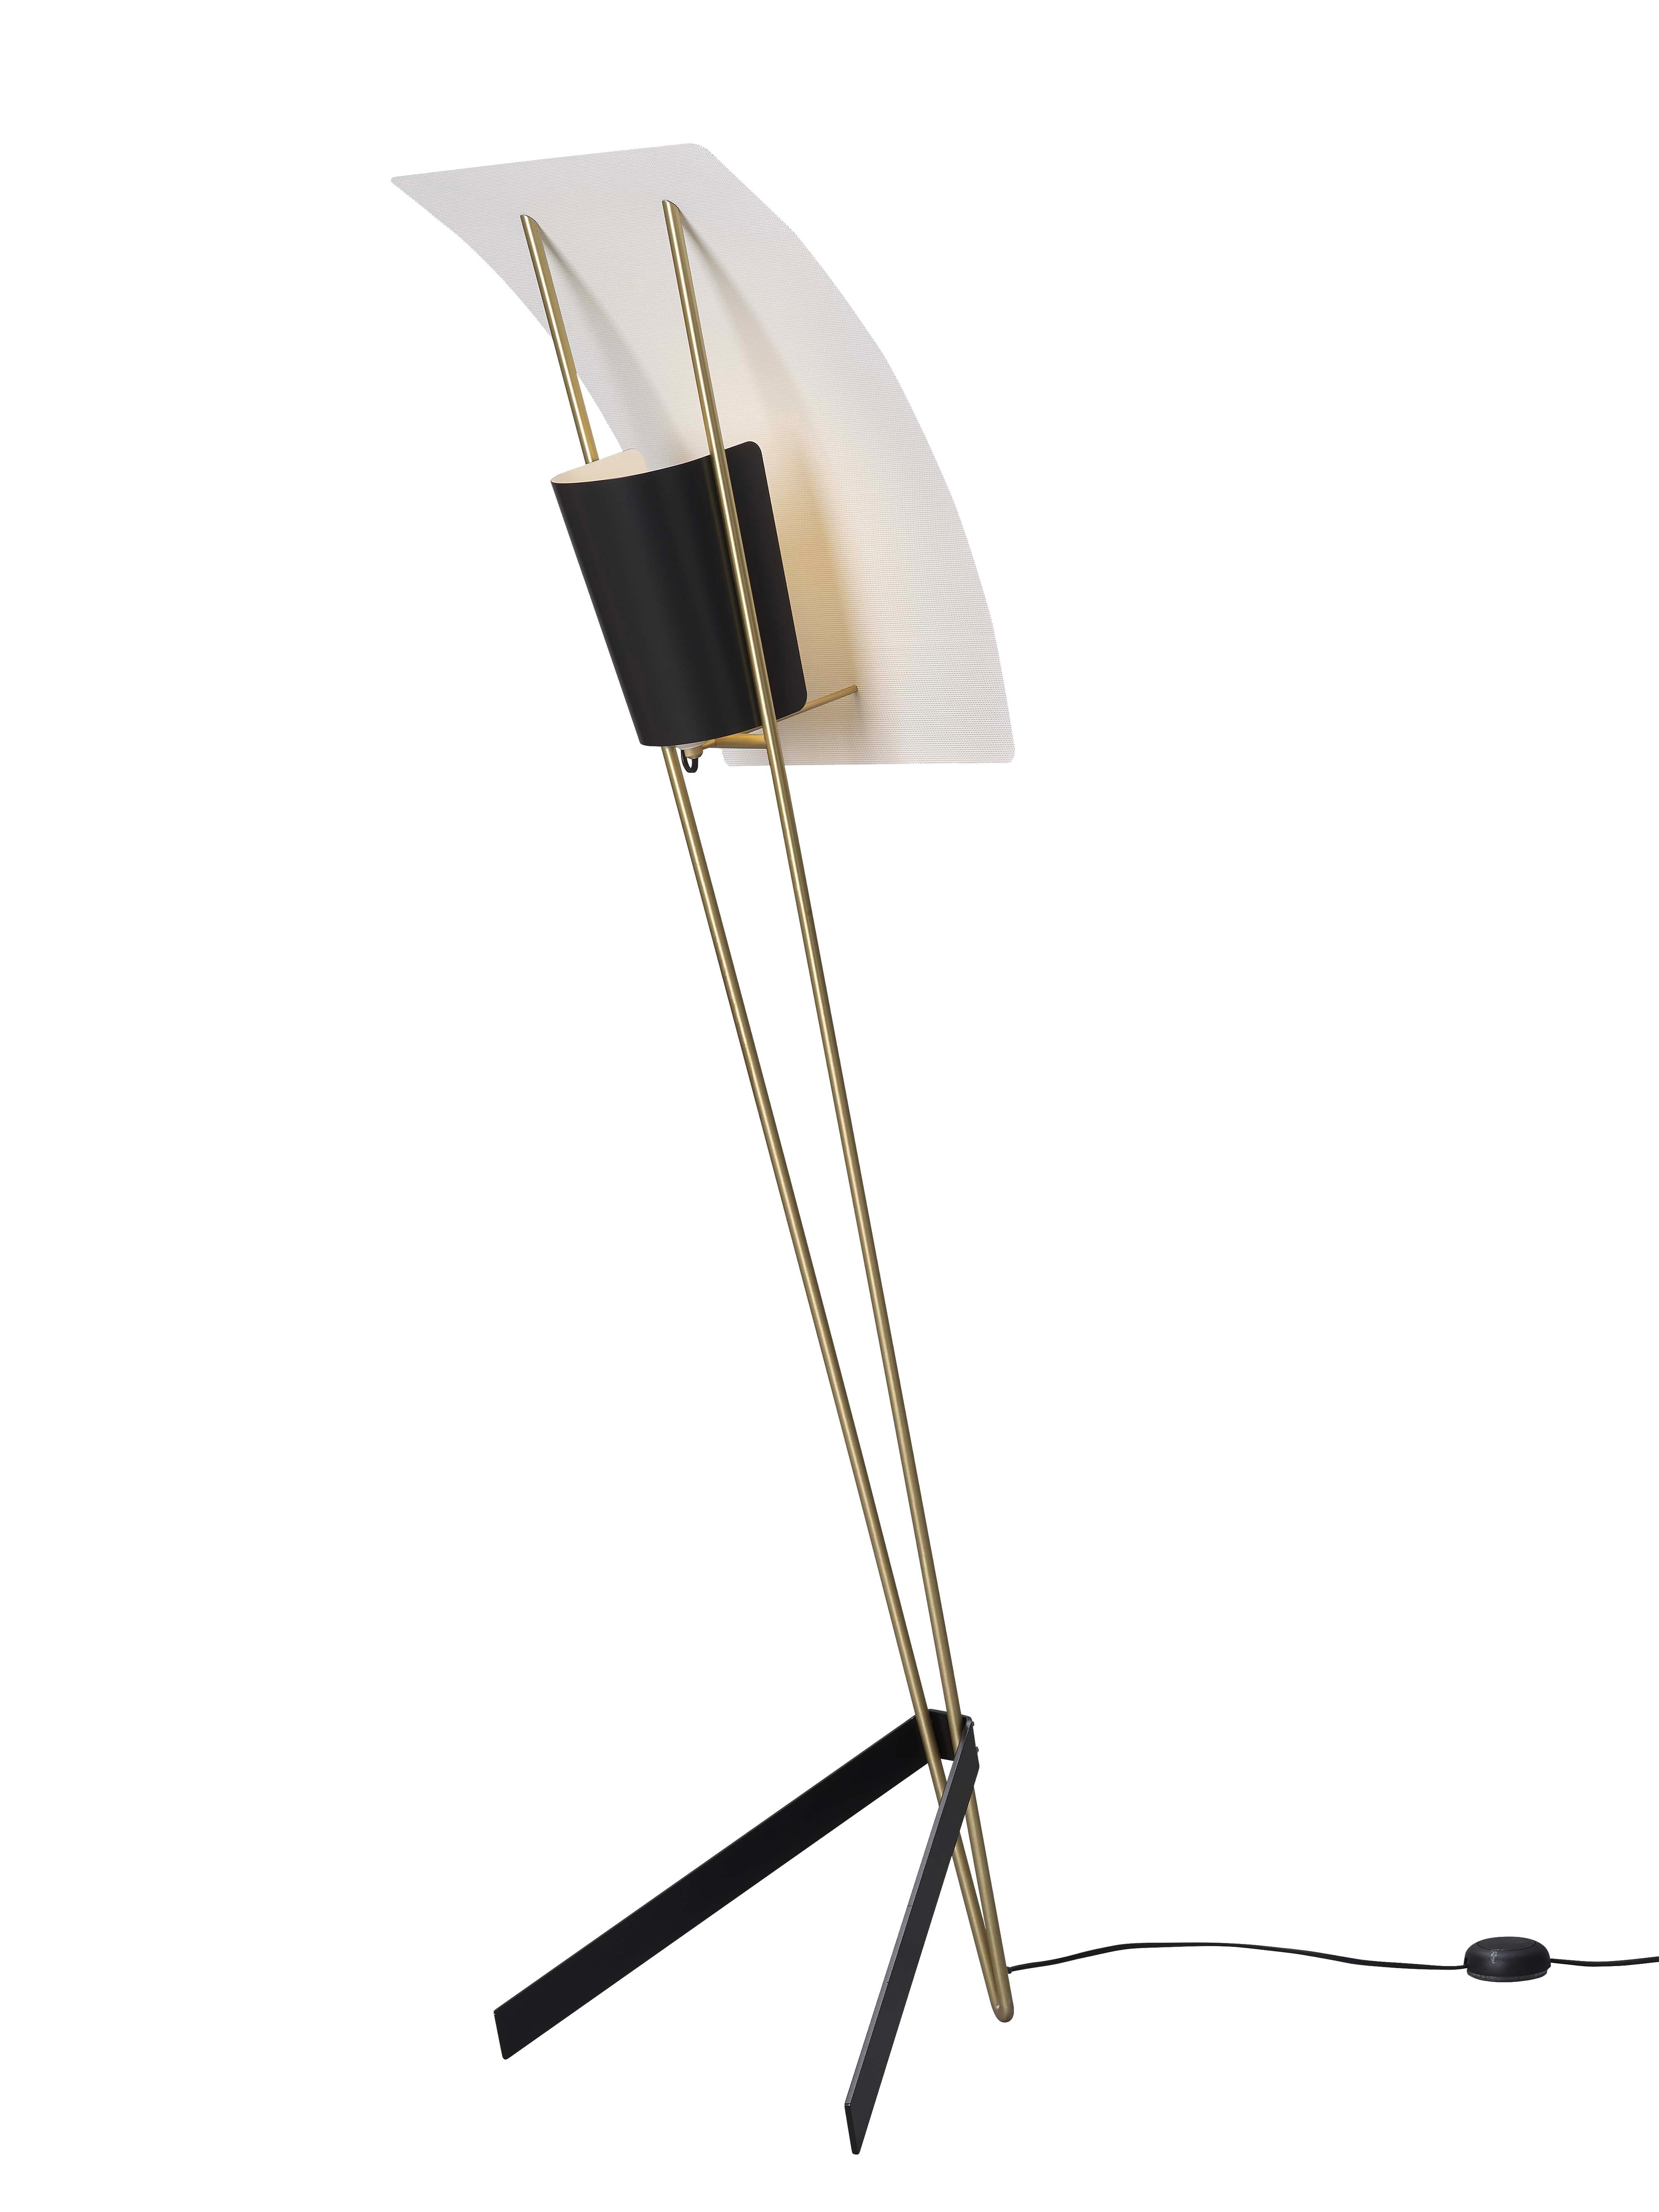 Pierre Guariche Kite Floor Lamp in White for Sammode Studio For Sale 4